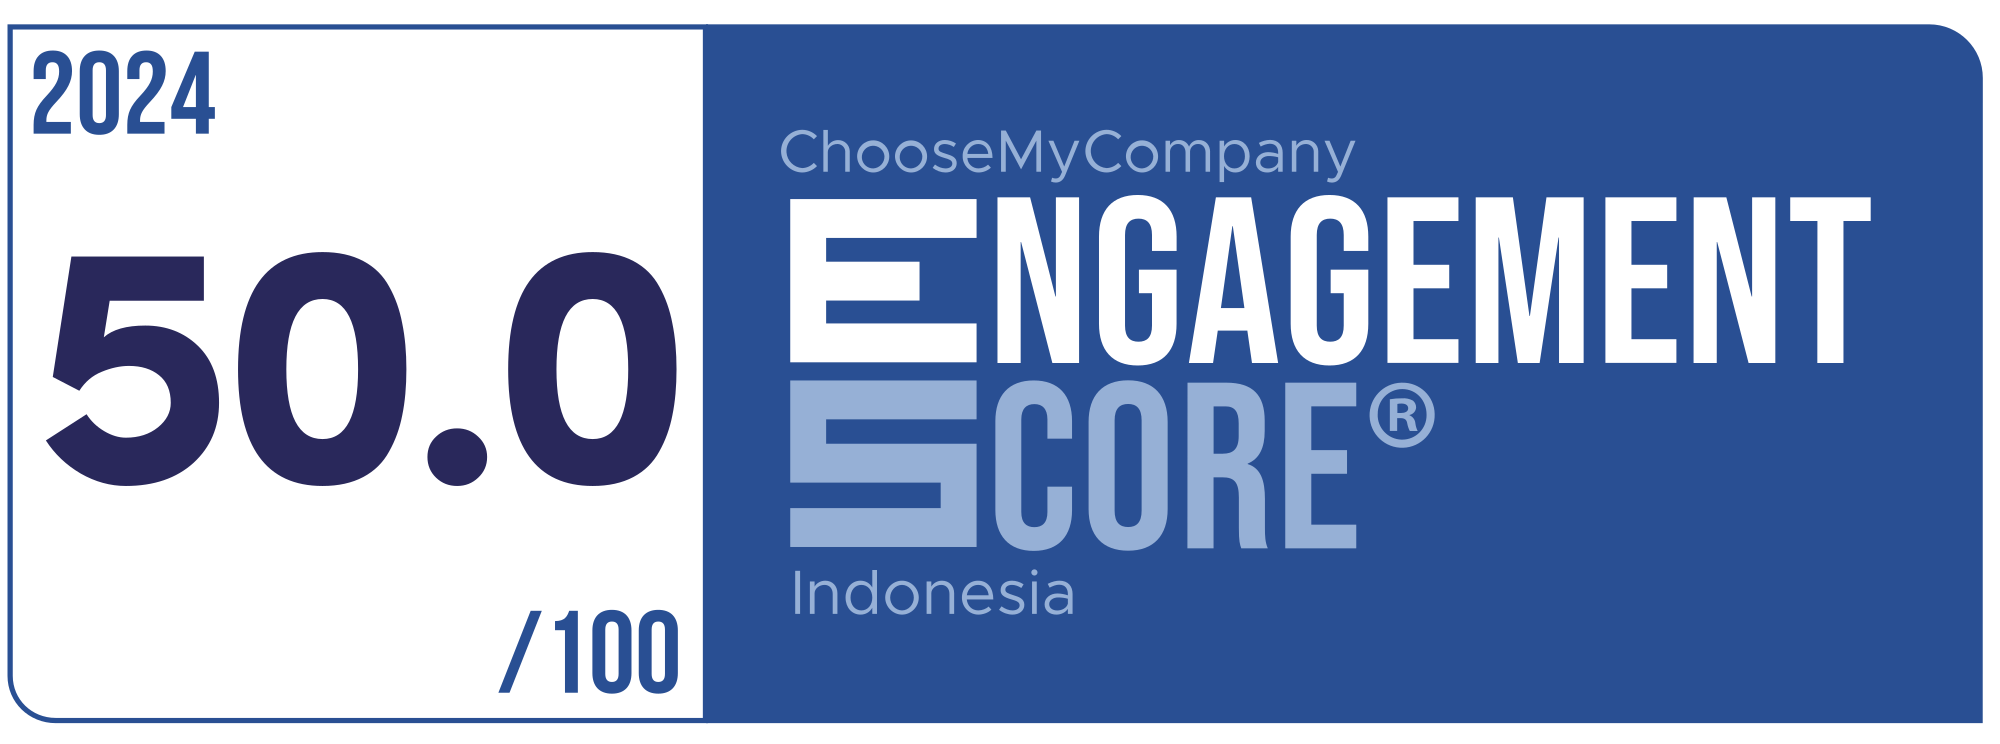 Label Engagement Score 2024 Indonesia